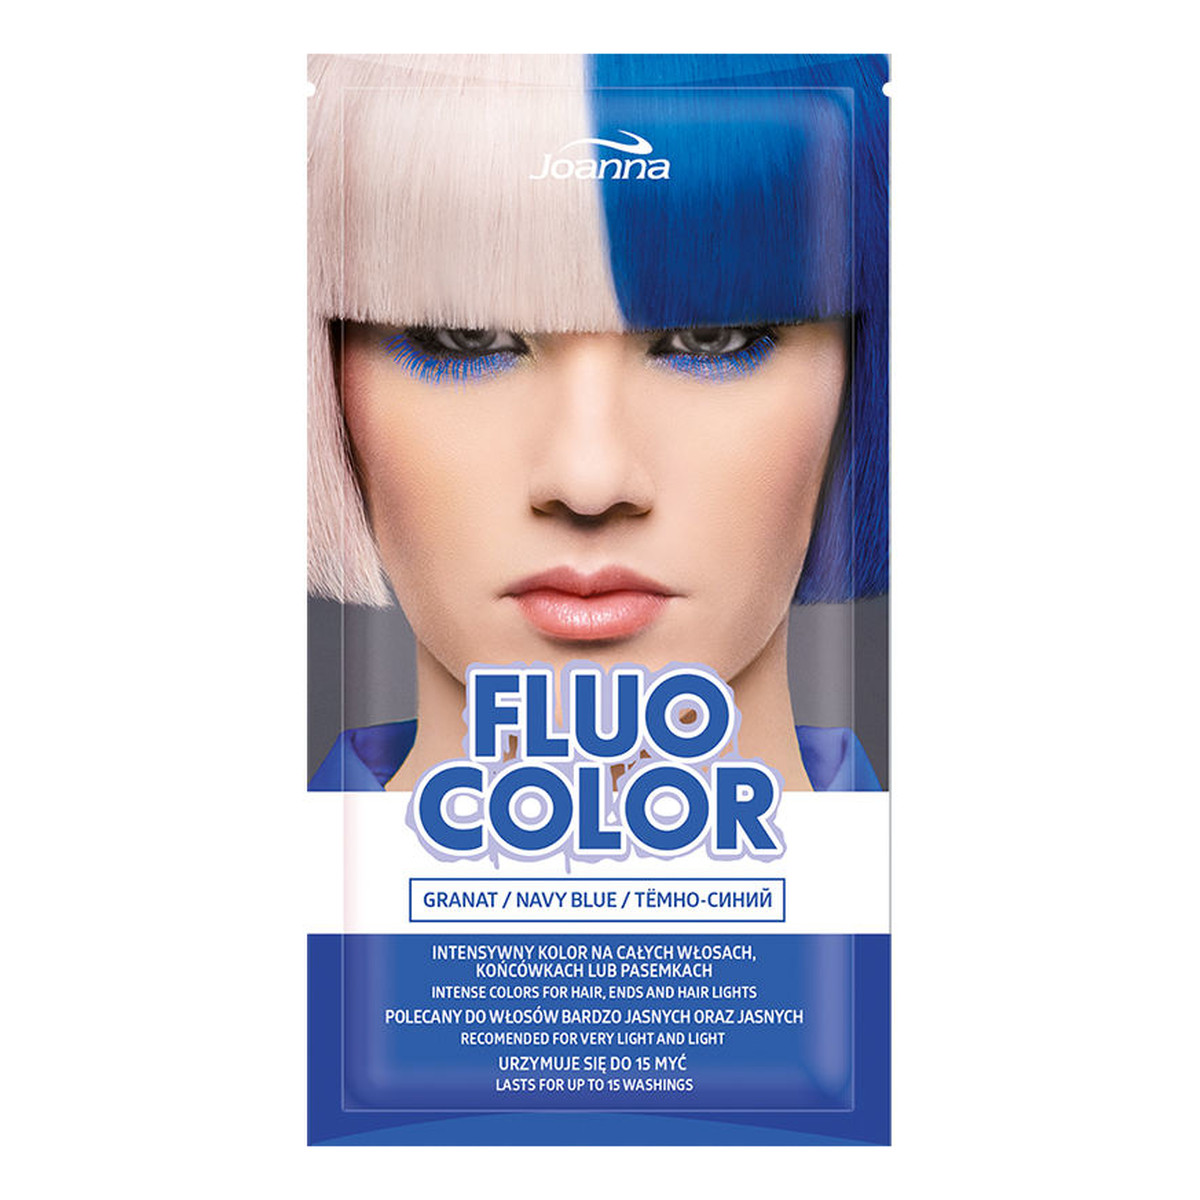 Joanna Fluo Color Szampon koloryzujący w saszetce 35g